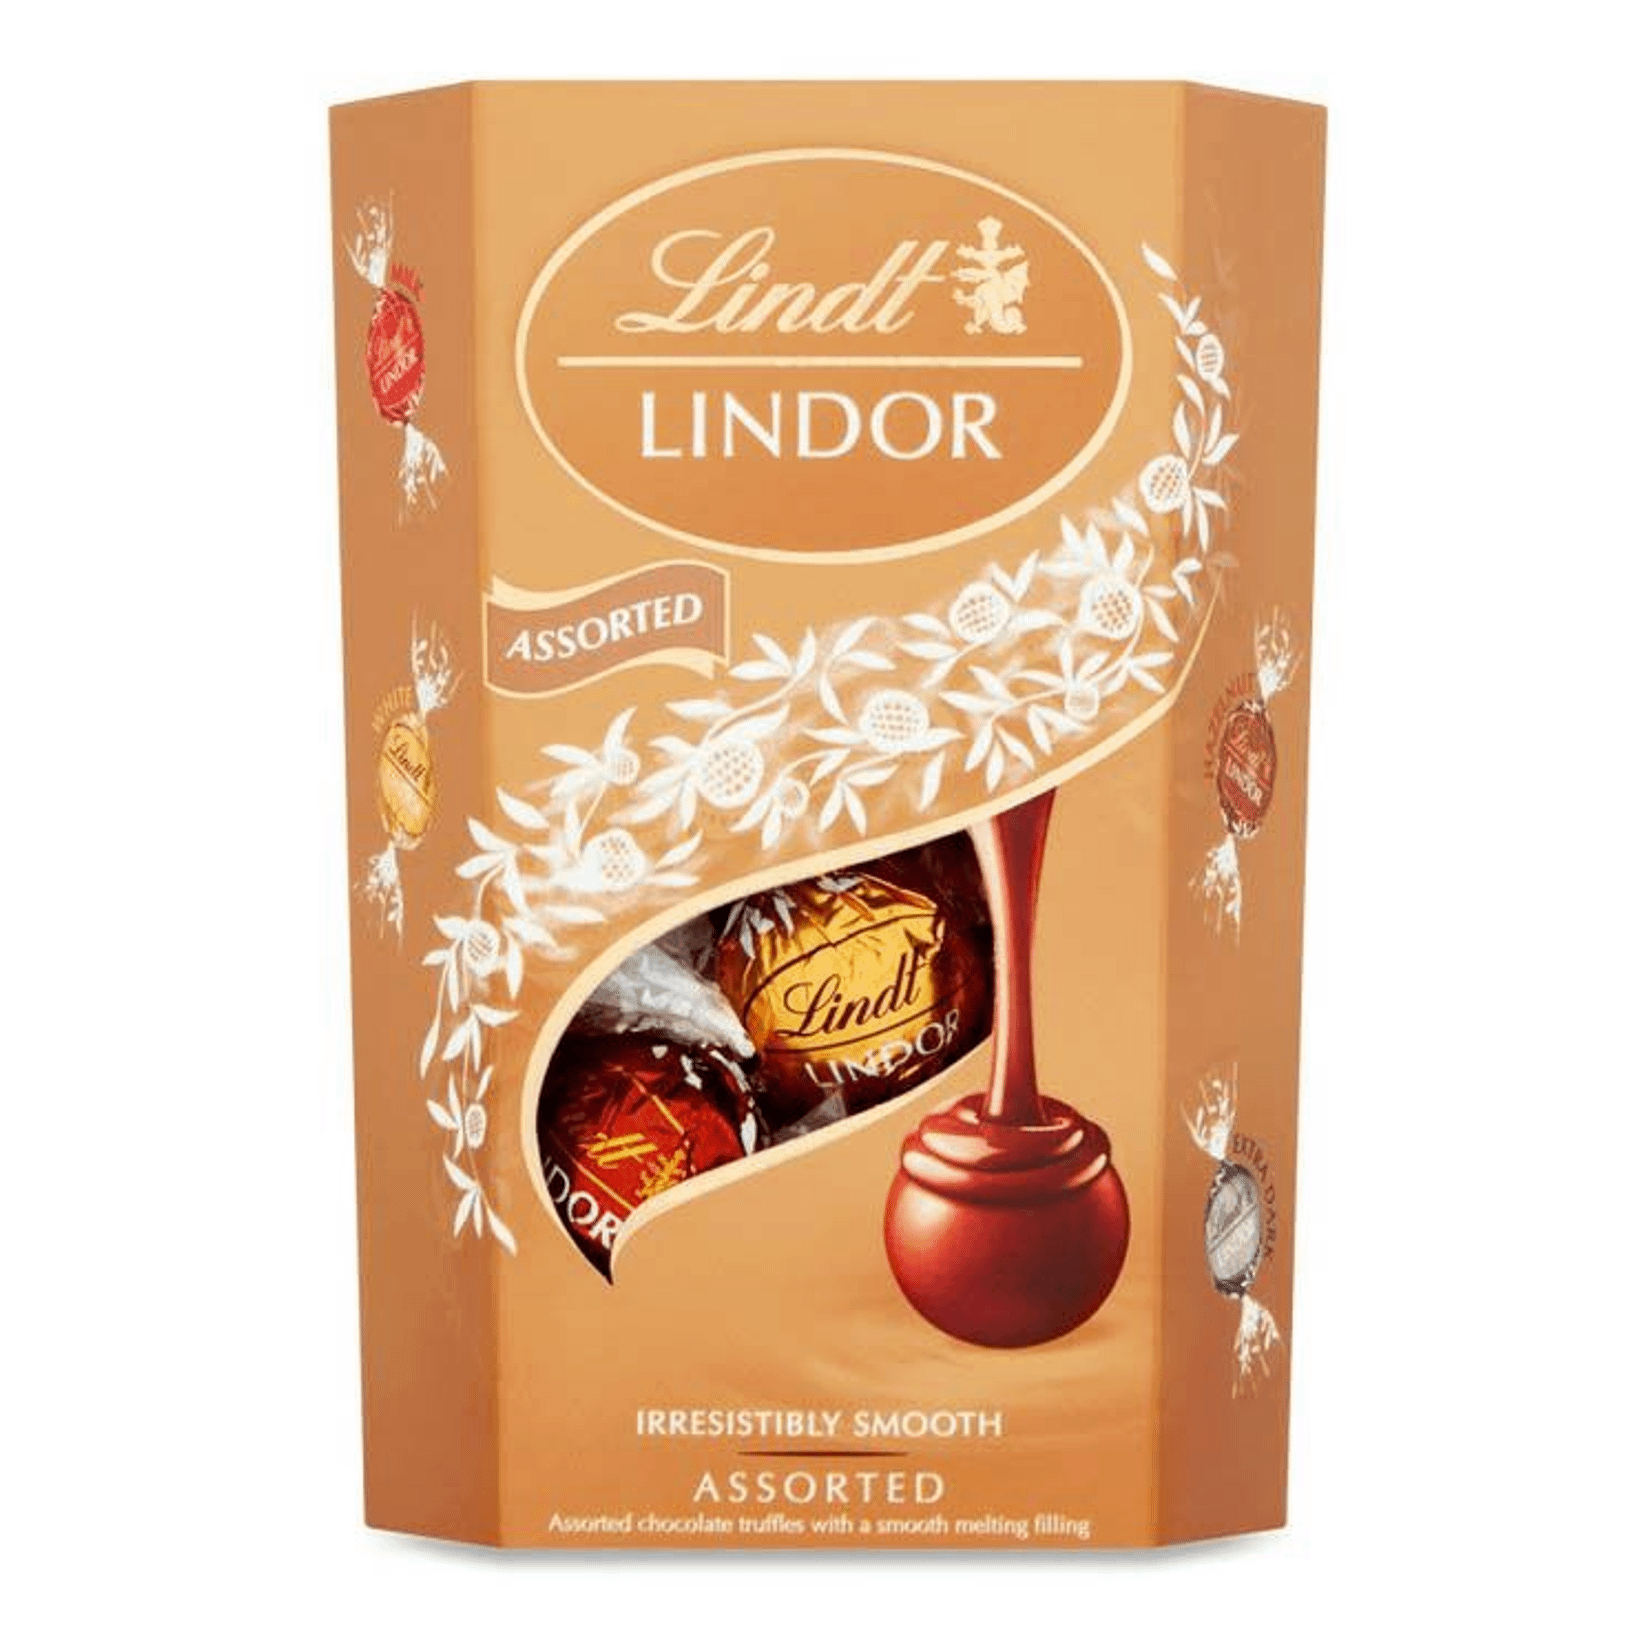 конфеты шоколадные белочка бабаевский 200 г Шоколадные конфеты Lindt Lindor Assorted 200 г